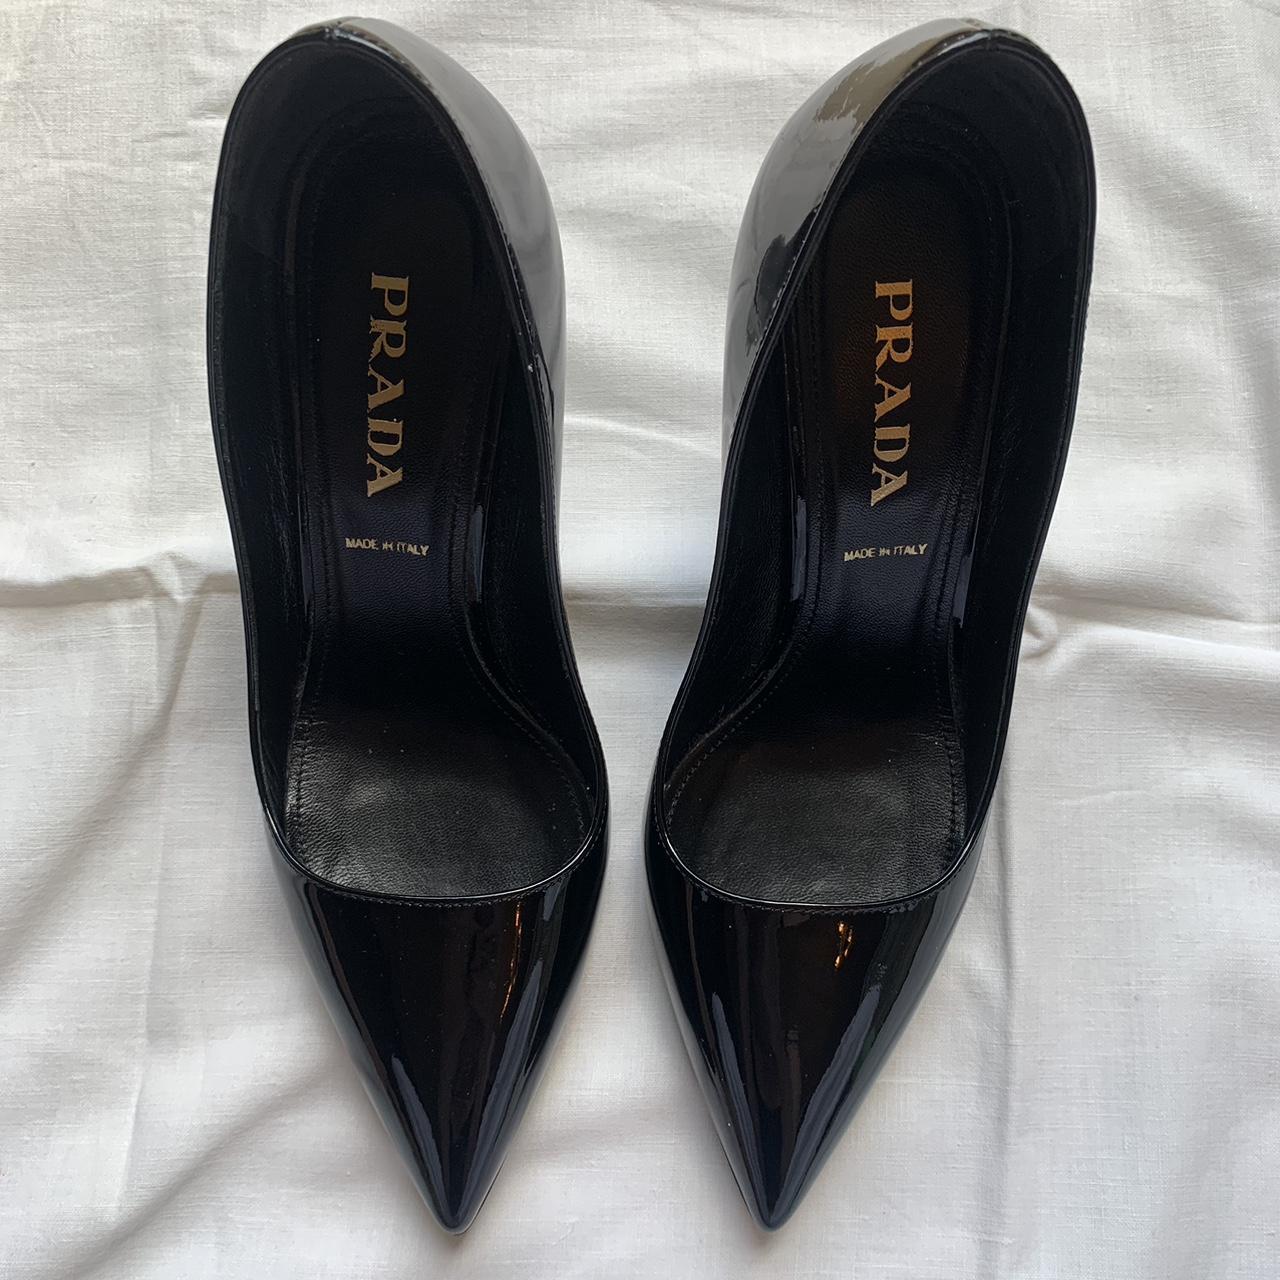 Classic Prada heels in great condition Size 35= Uk... - Depop